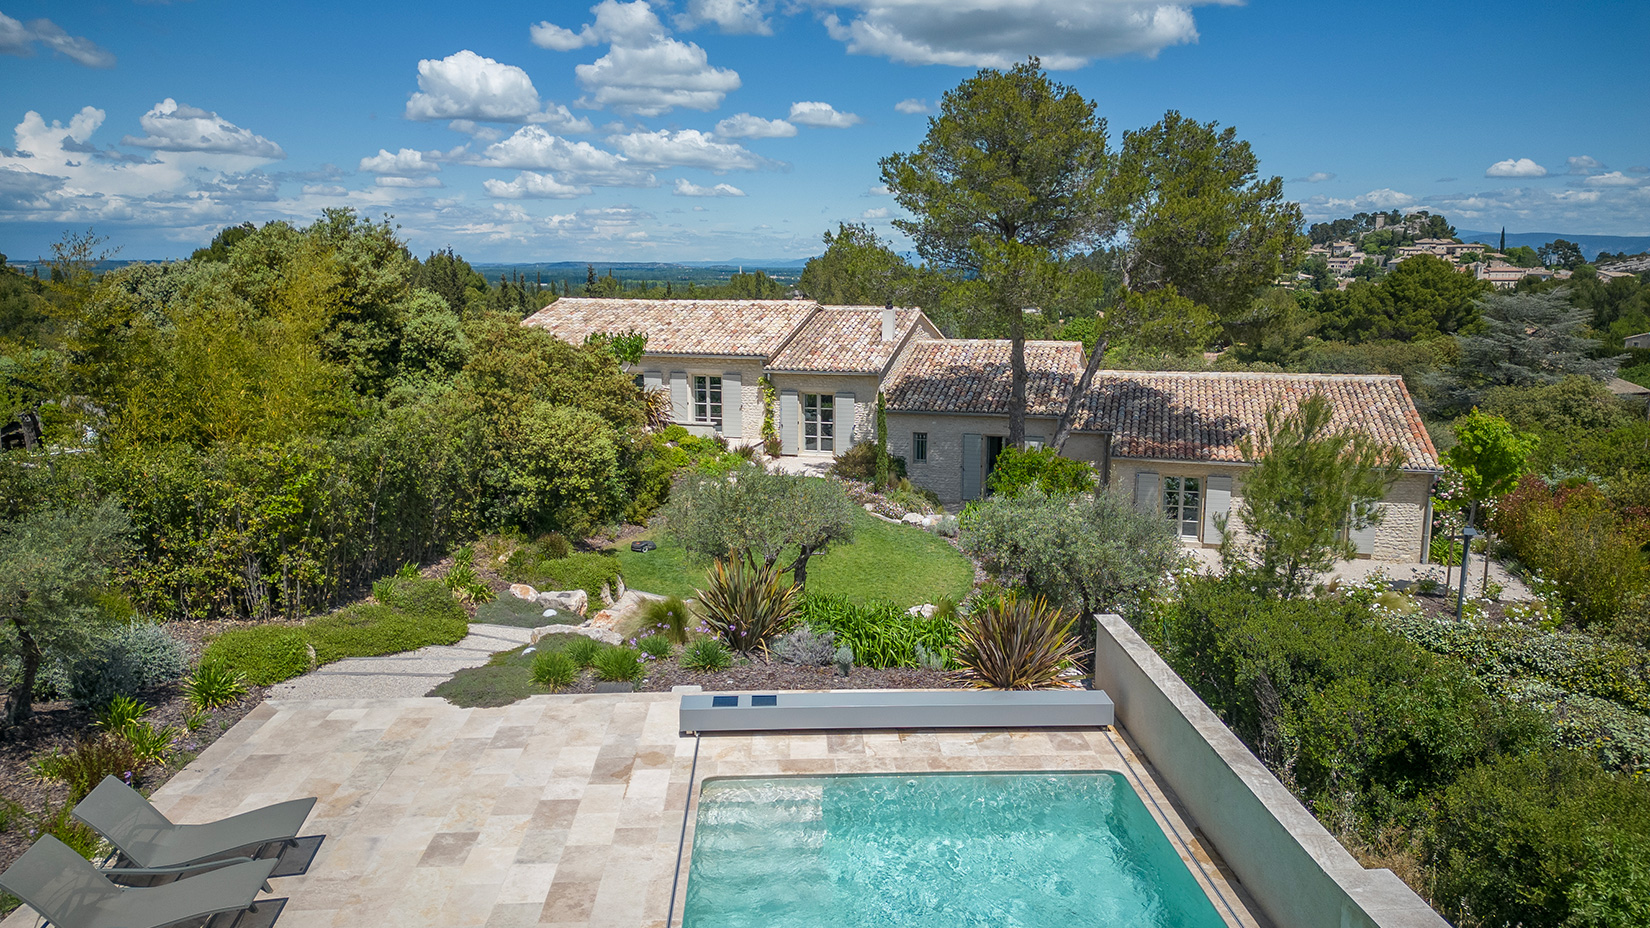 Location villa luxe Provence